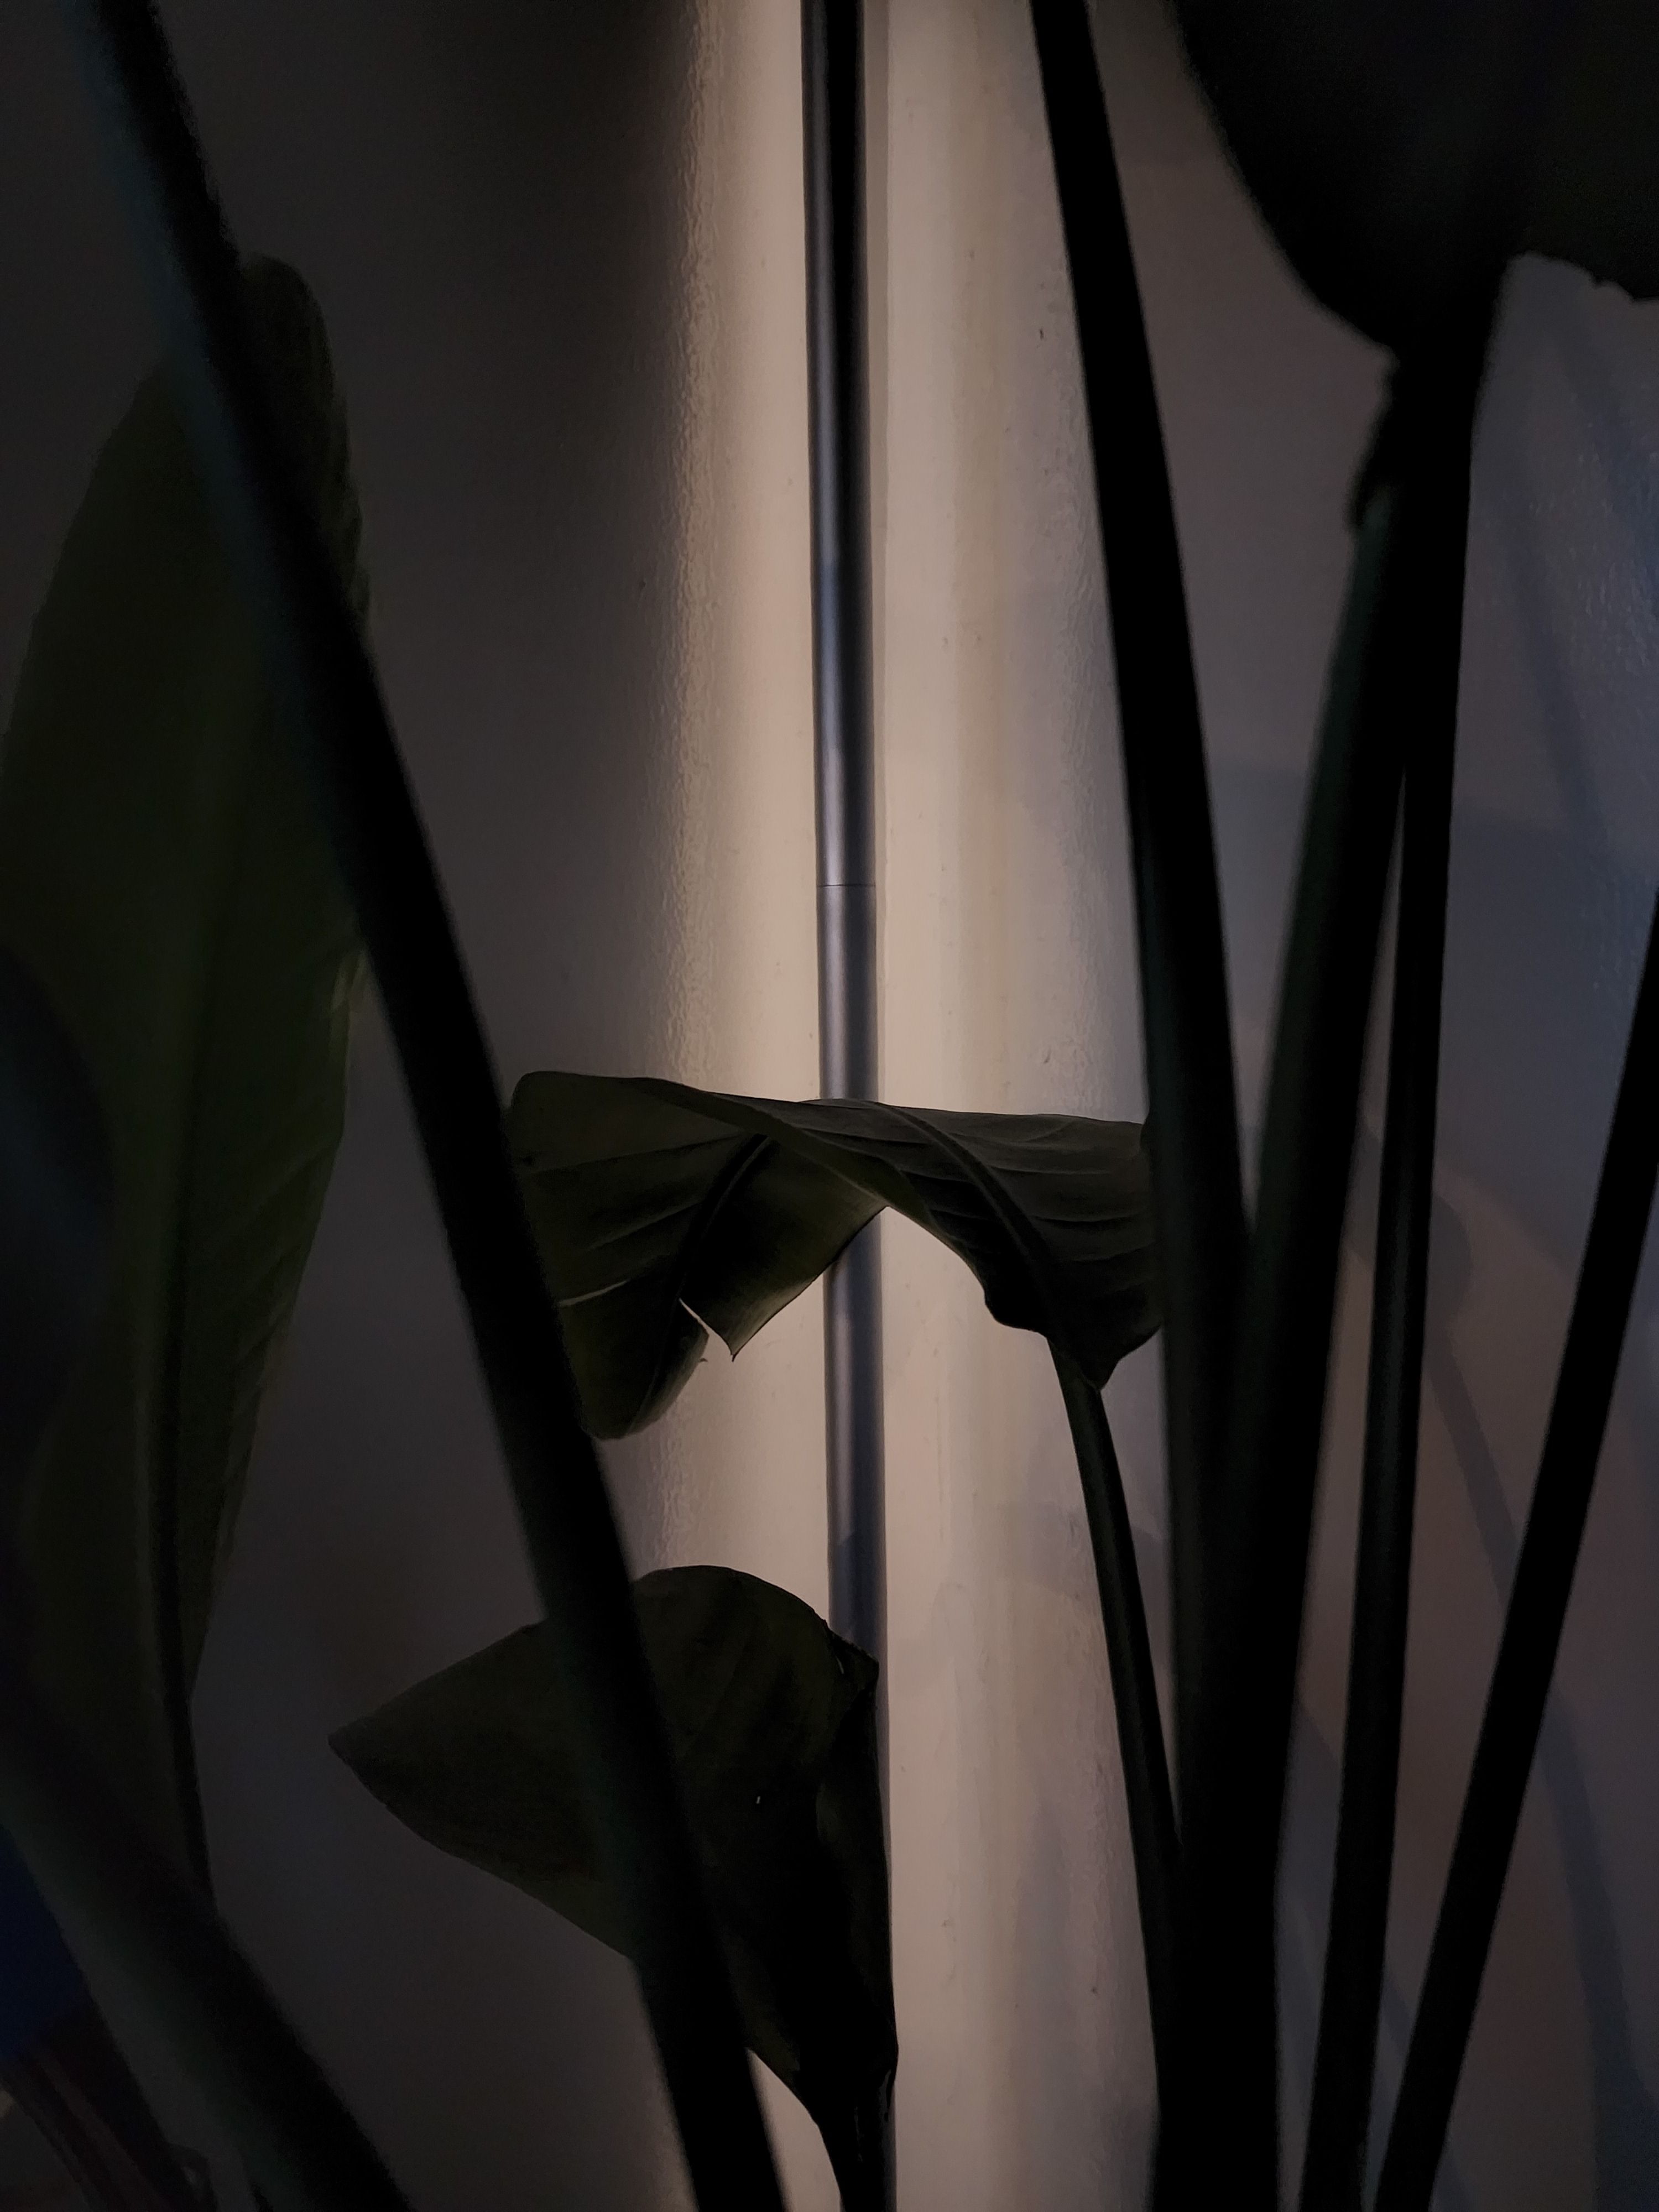 Uma cena escura de uma planta de casa filmada com binning de pixel.